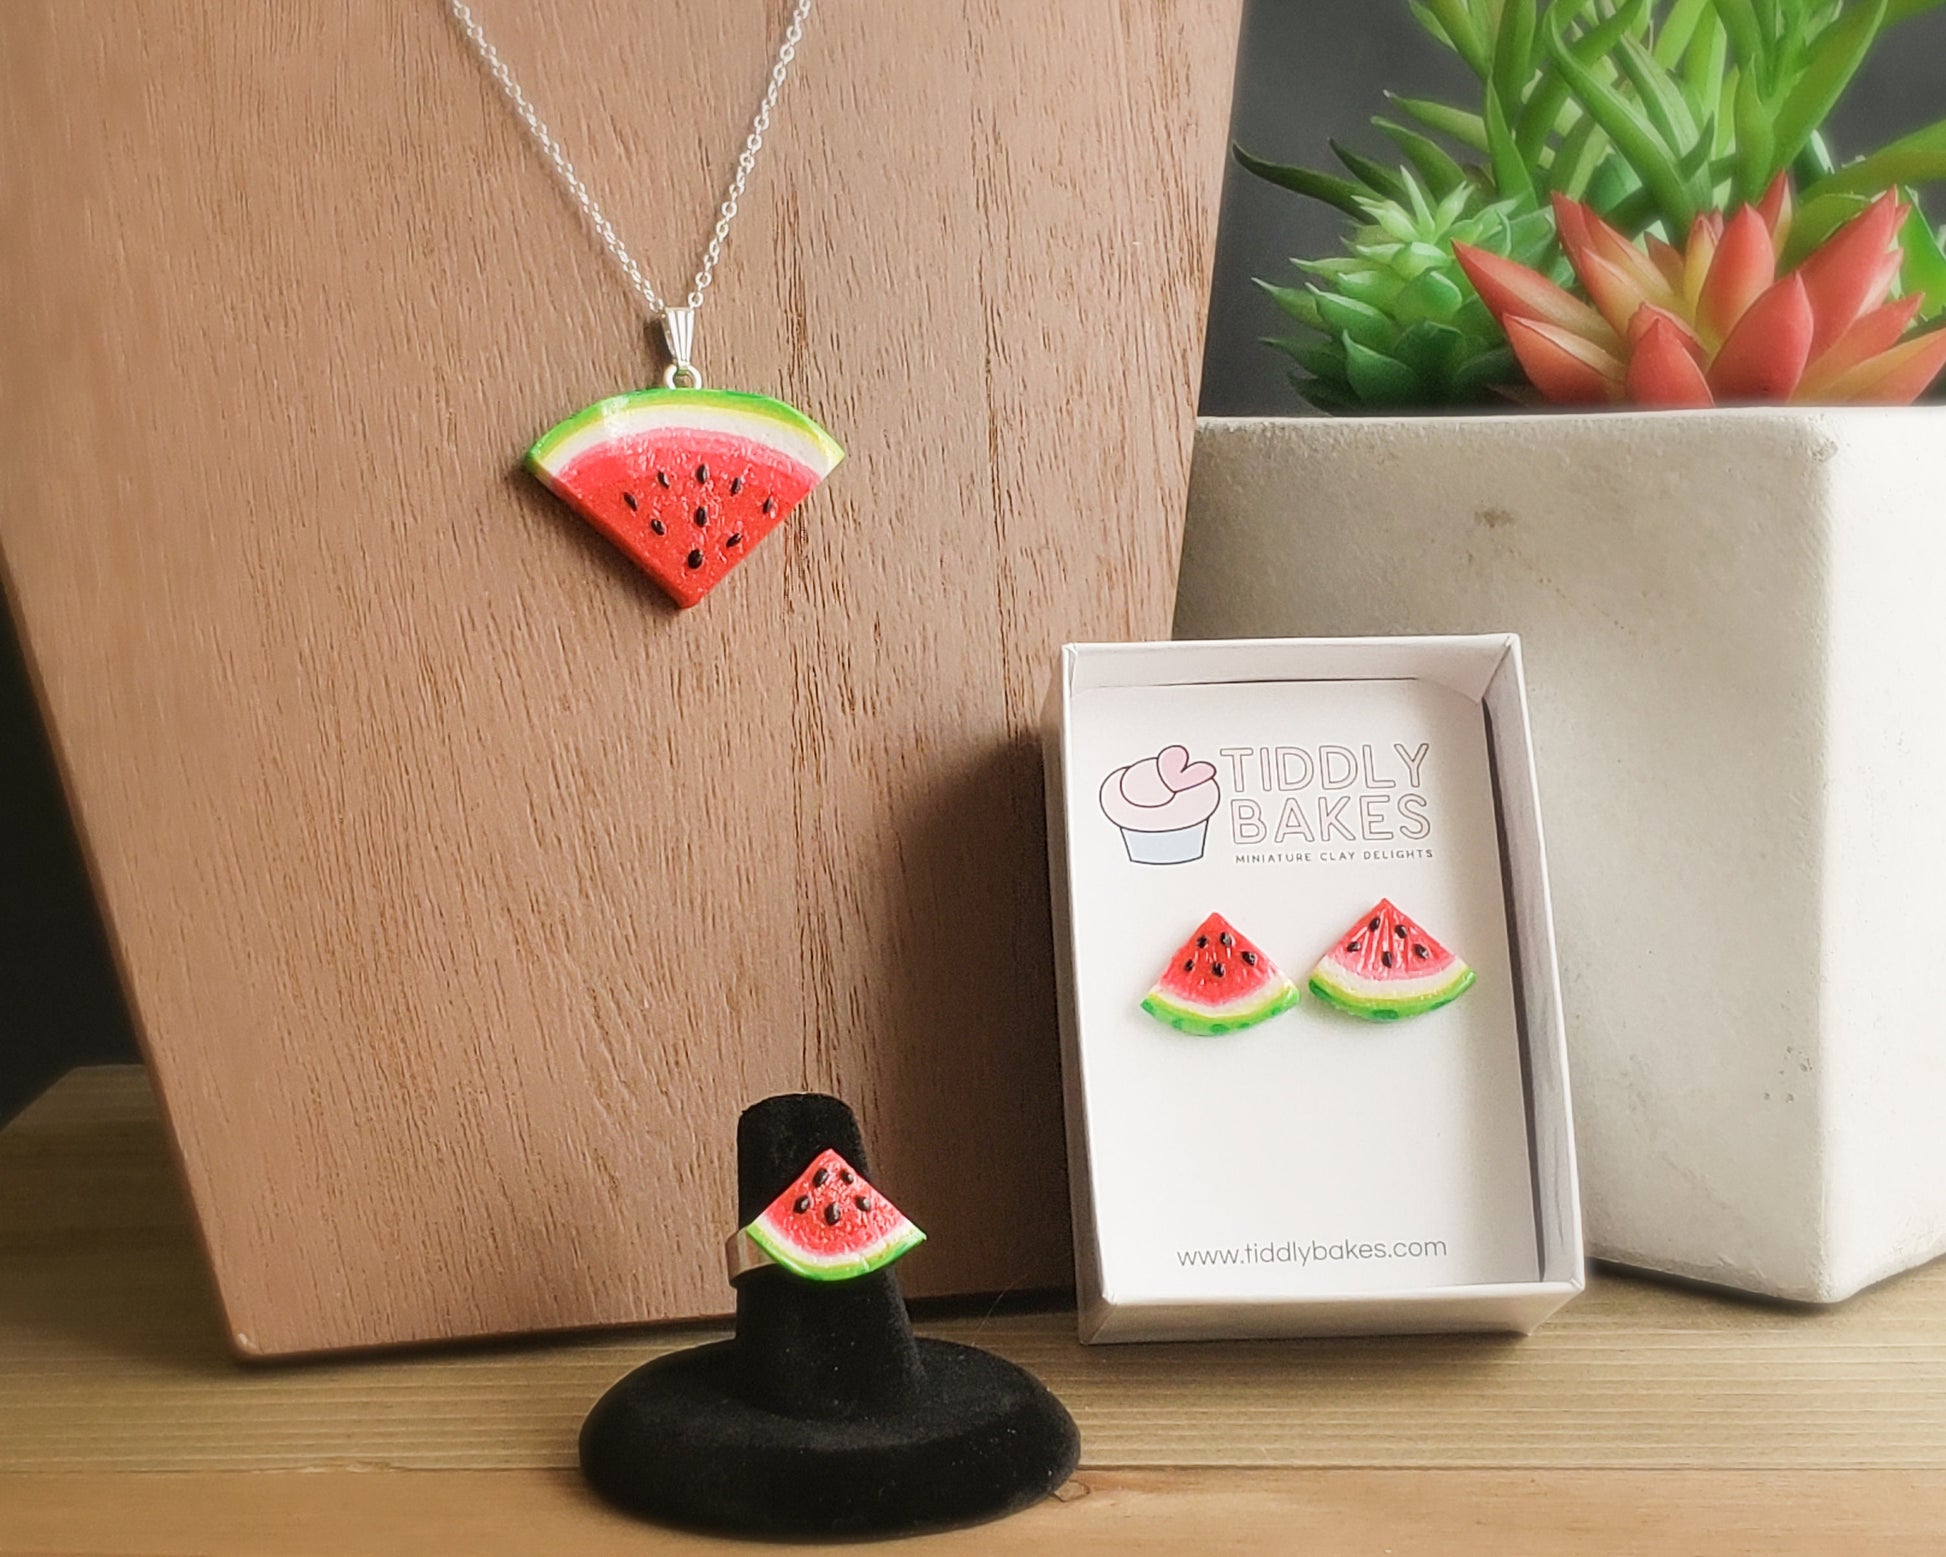 Bulk Enamel Watermelon Charms for DIY Jewelry Making - Dearbeads